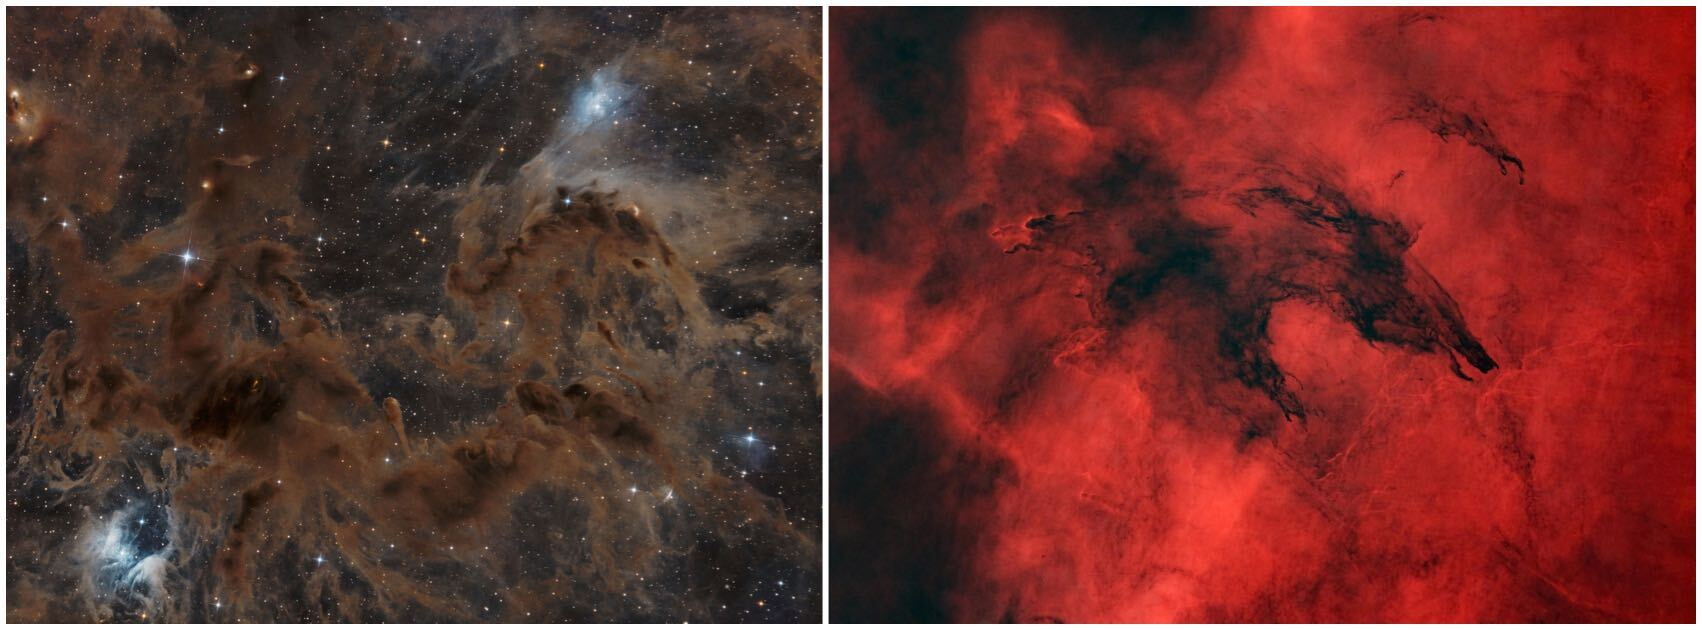 星雲の画像。1 つは茶色、もう 1 つは赤色です。